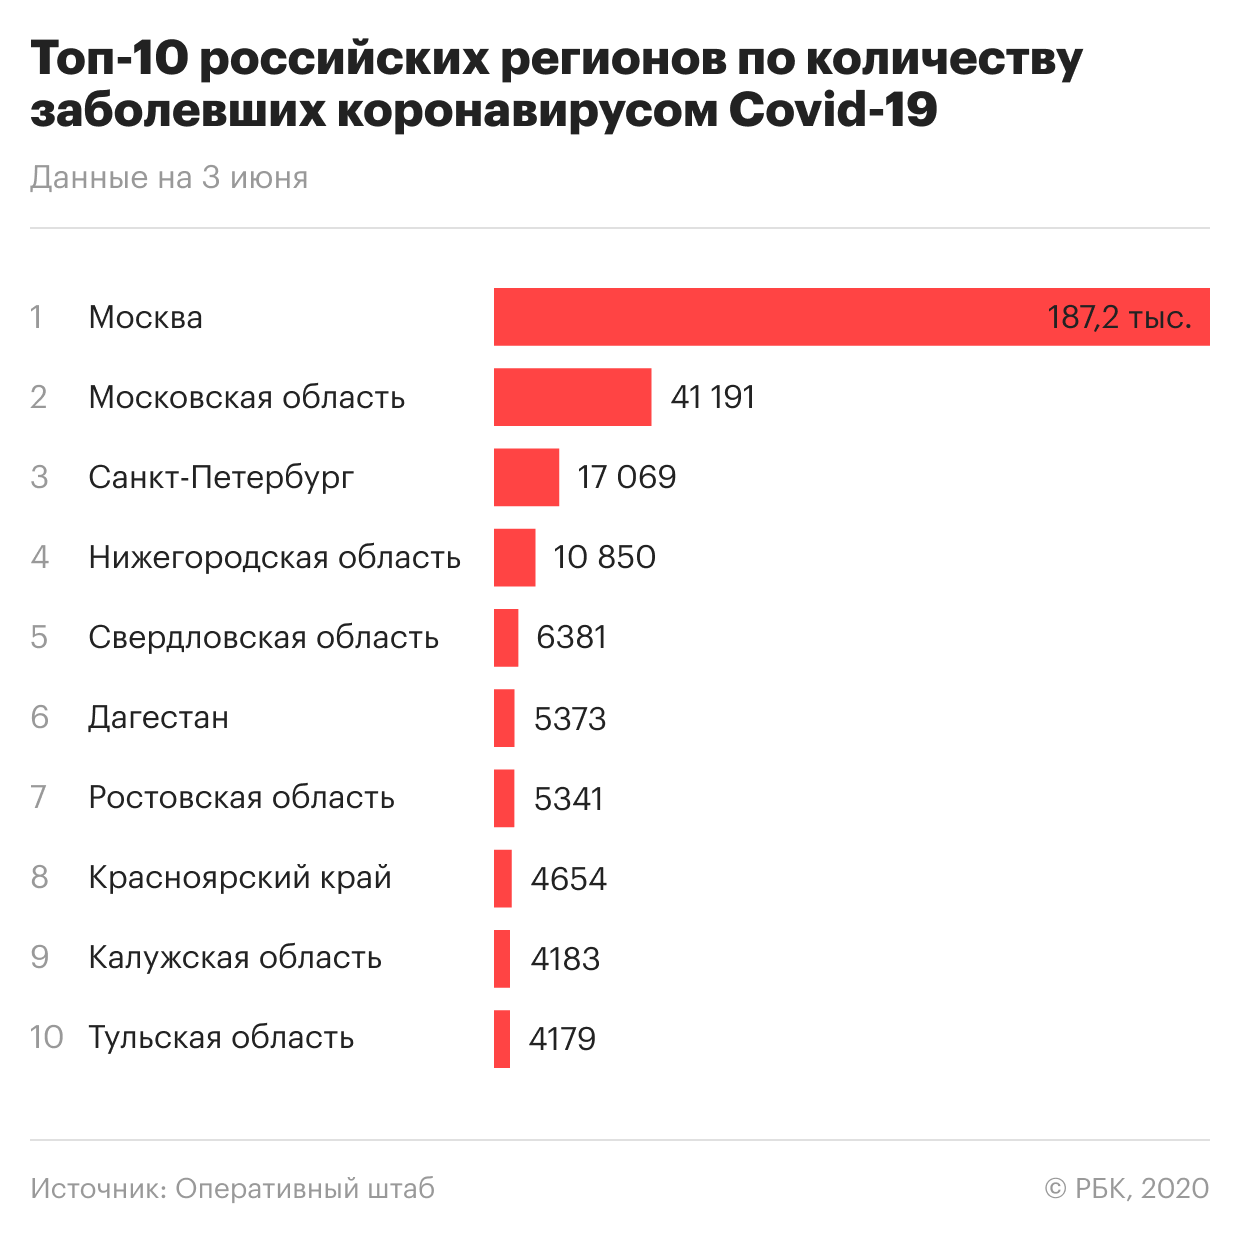 Области сколько заболела человек. Сколько заболевших в России. Сколько человек заболело коронавиру. Количество заболевших. Статистика пандемии в России.